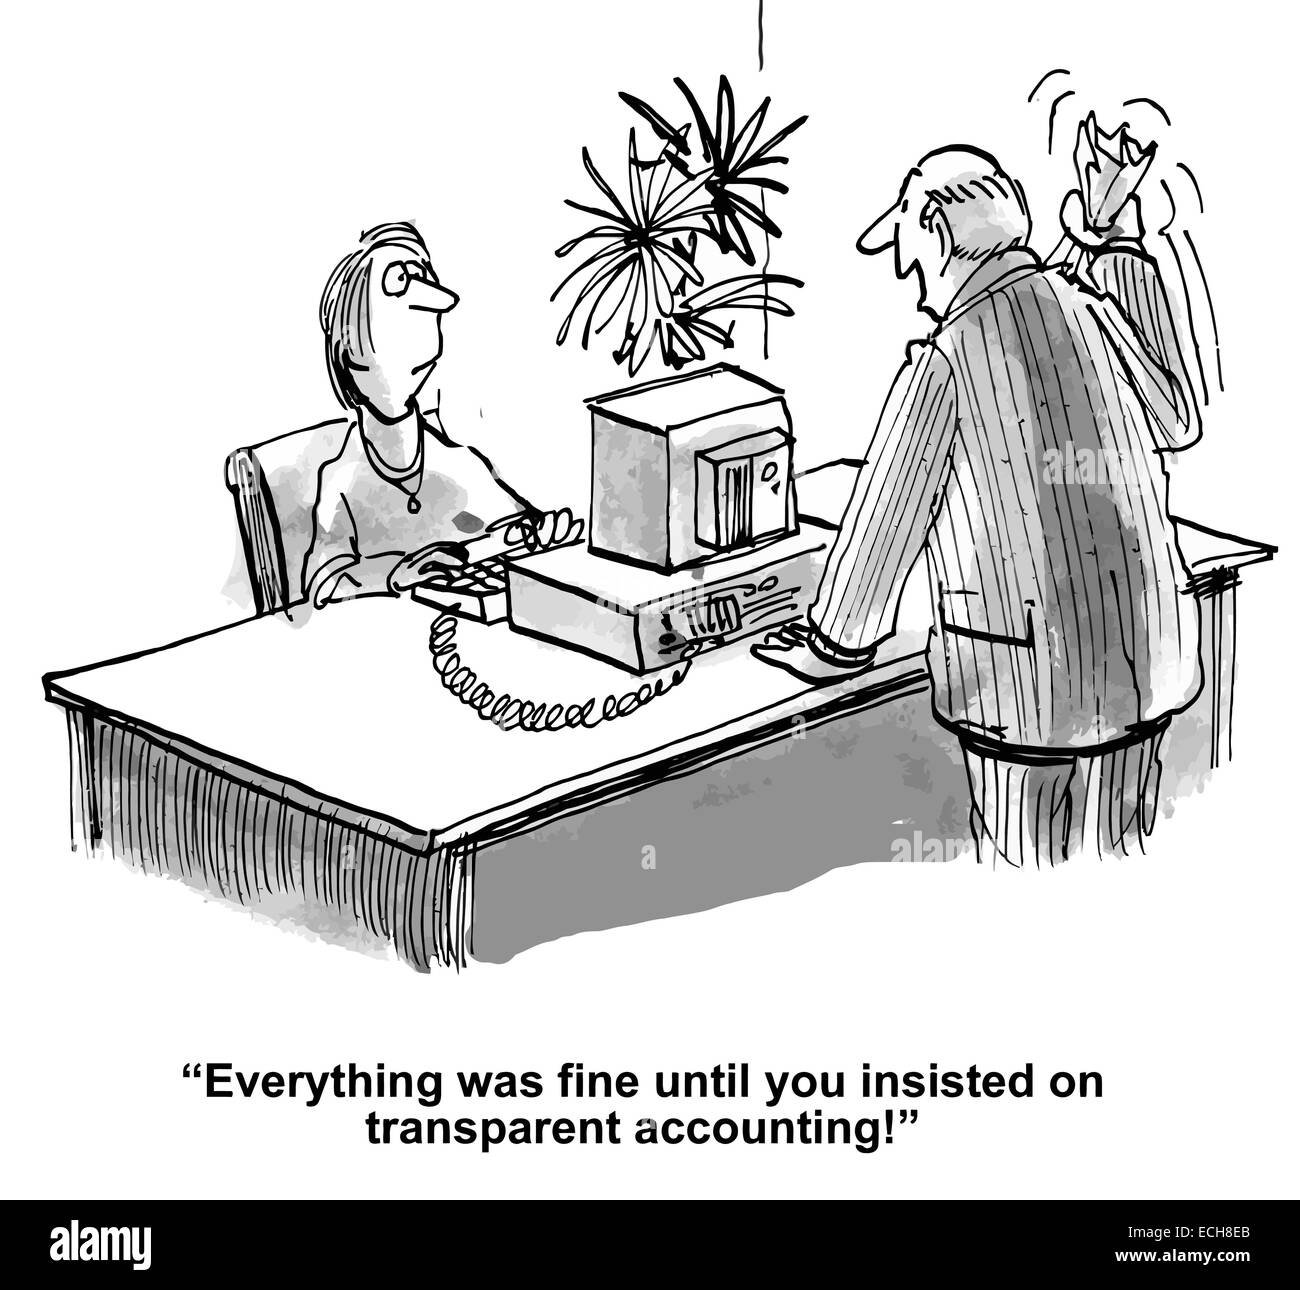 "Tout allait bien jusqu'à vous ont insisté sur comptabilité transparente !' Illustration de Vecteur